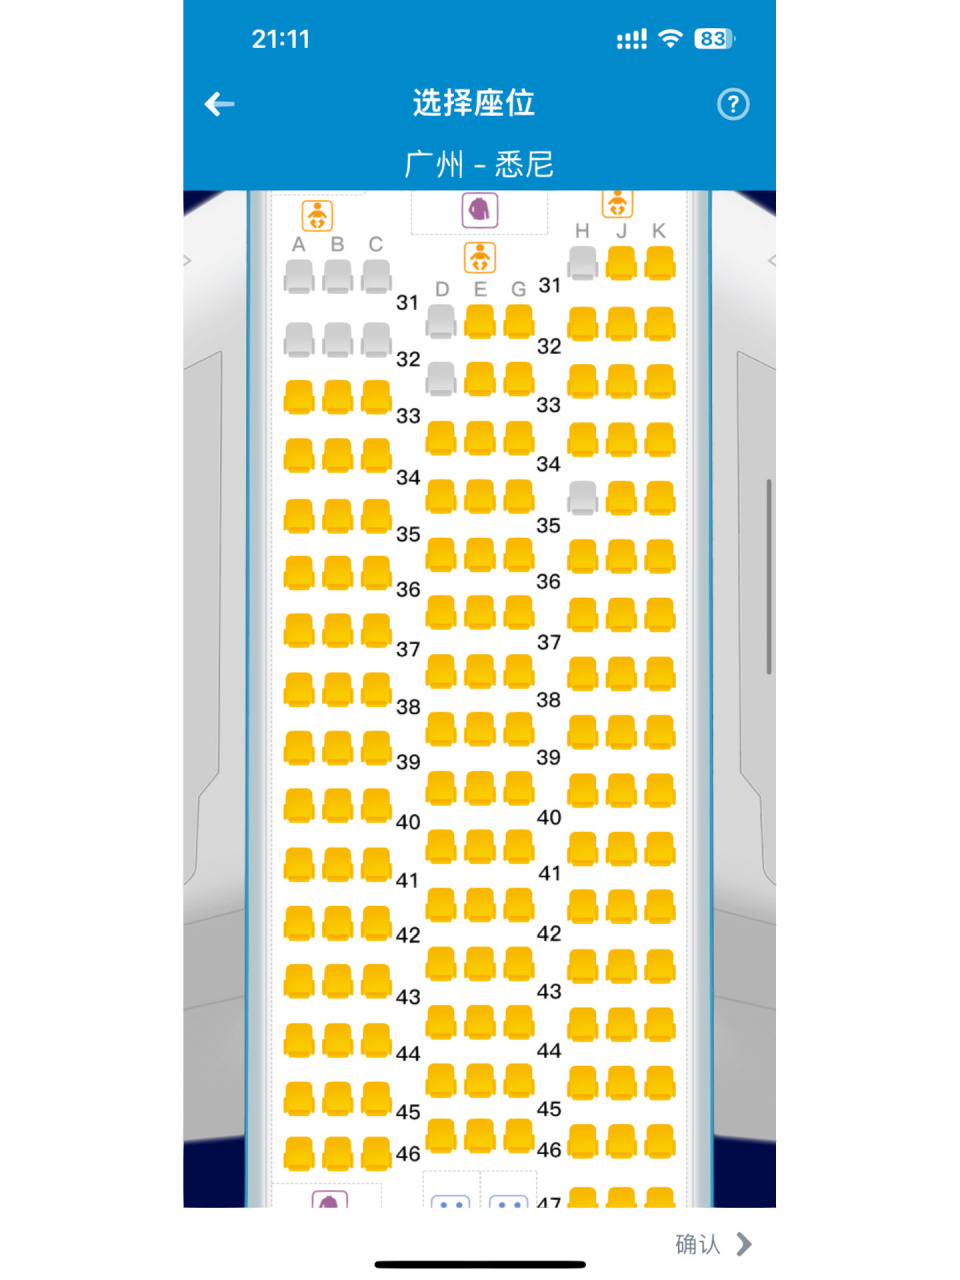 南航波音787选座 求助各位选哪个比较好呀?听说31k比较宽